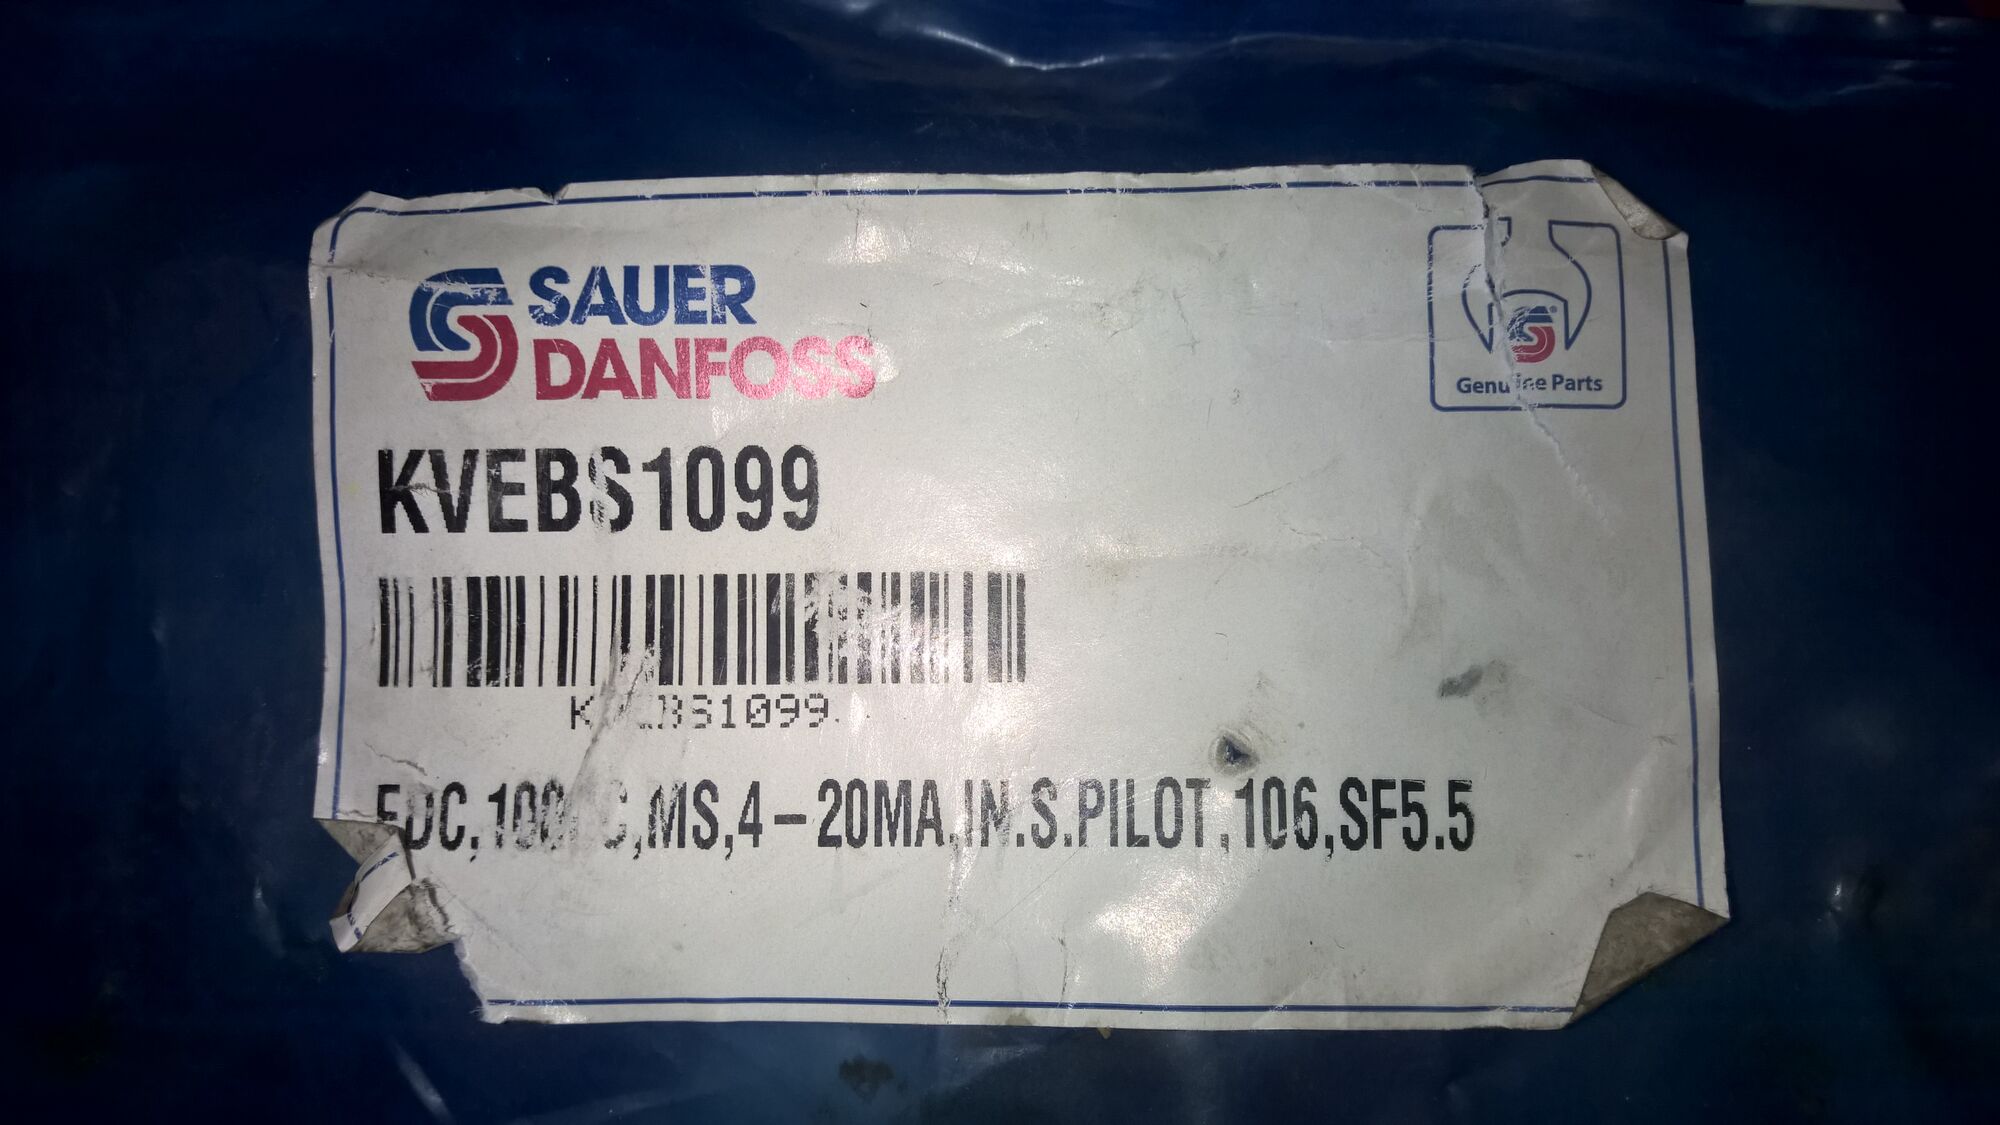 Клапан kvebs1099 управления гидронасосом 90PV100 Danfoss Power Solutions, Зауэр Данфосс. 6